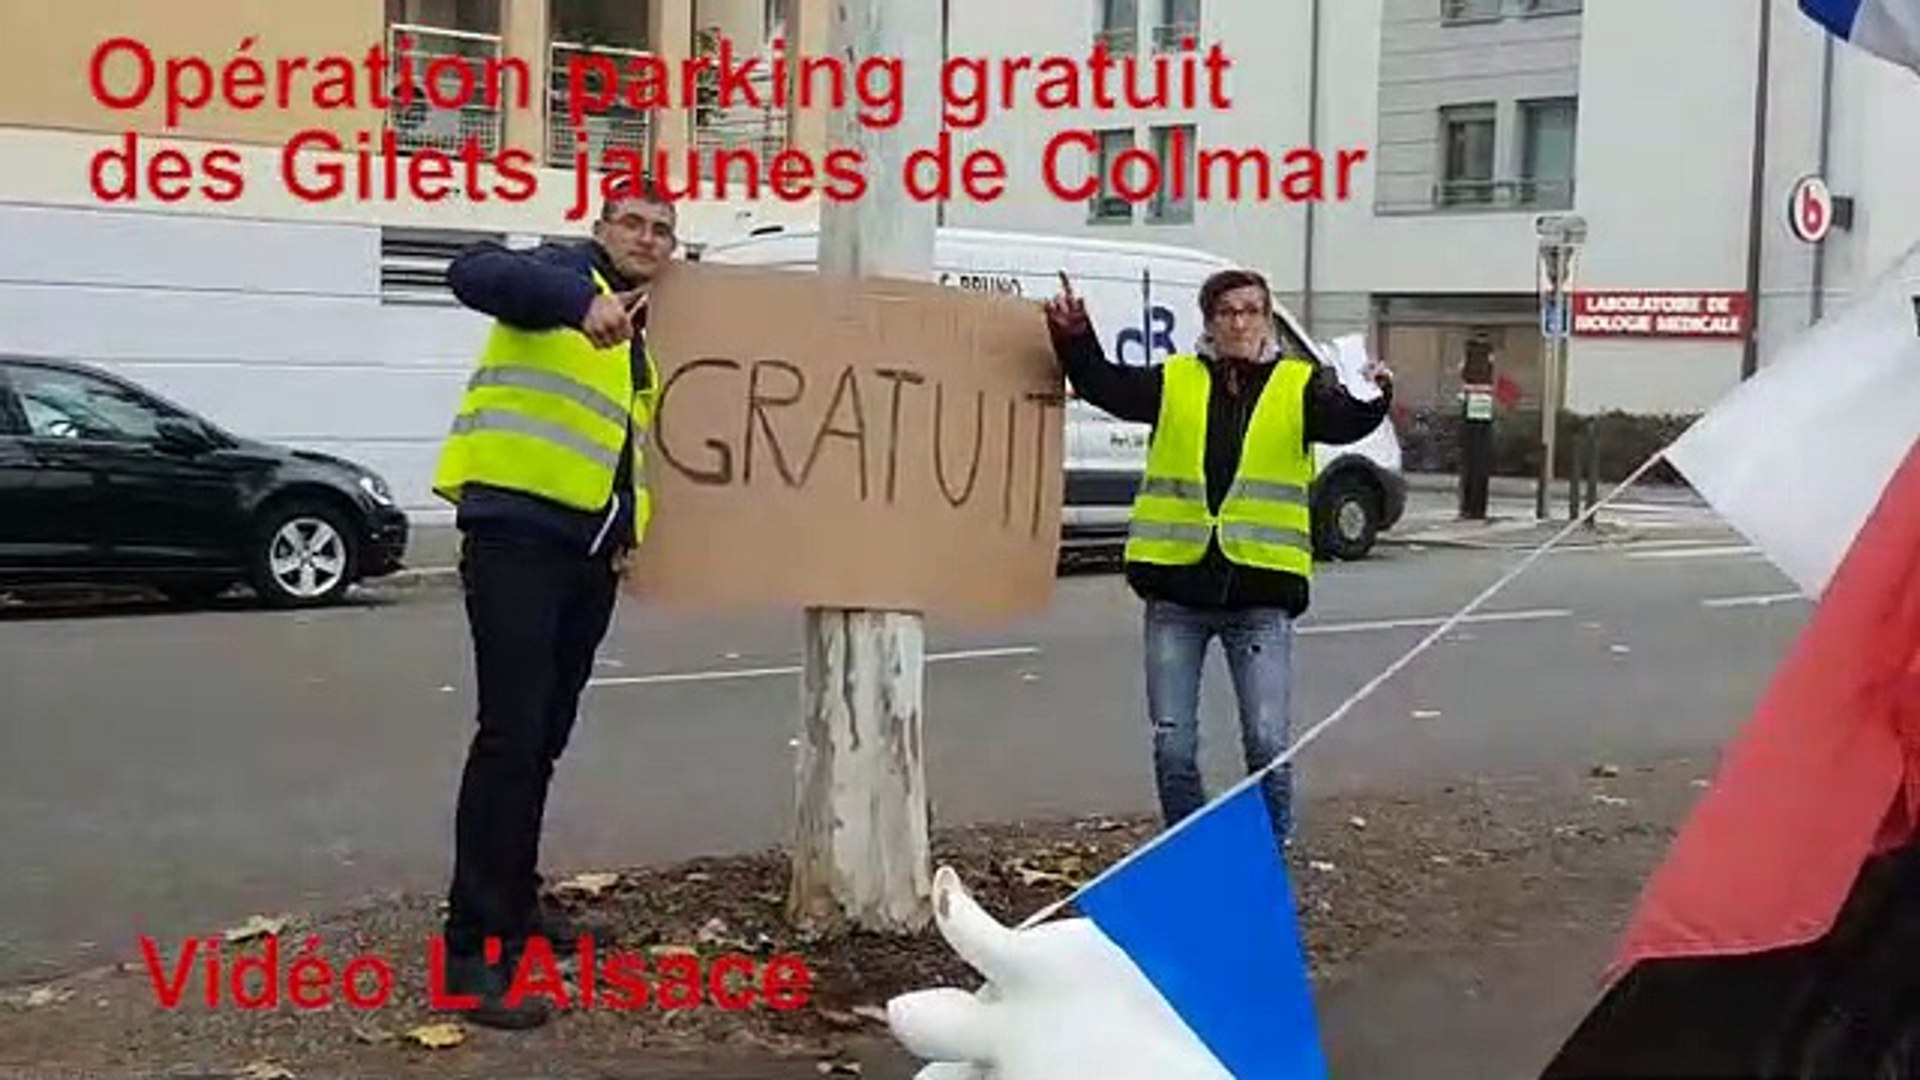 Les Gilets jaunes de Colmar organisent une opération "parking gratuit" -  Vidéo Dailymotion